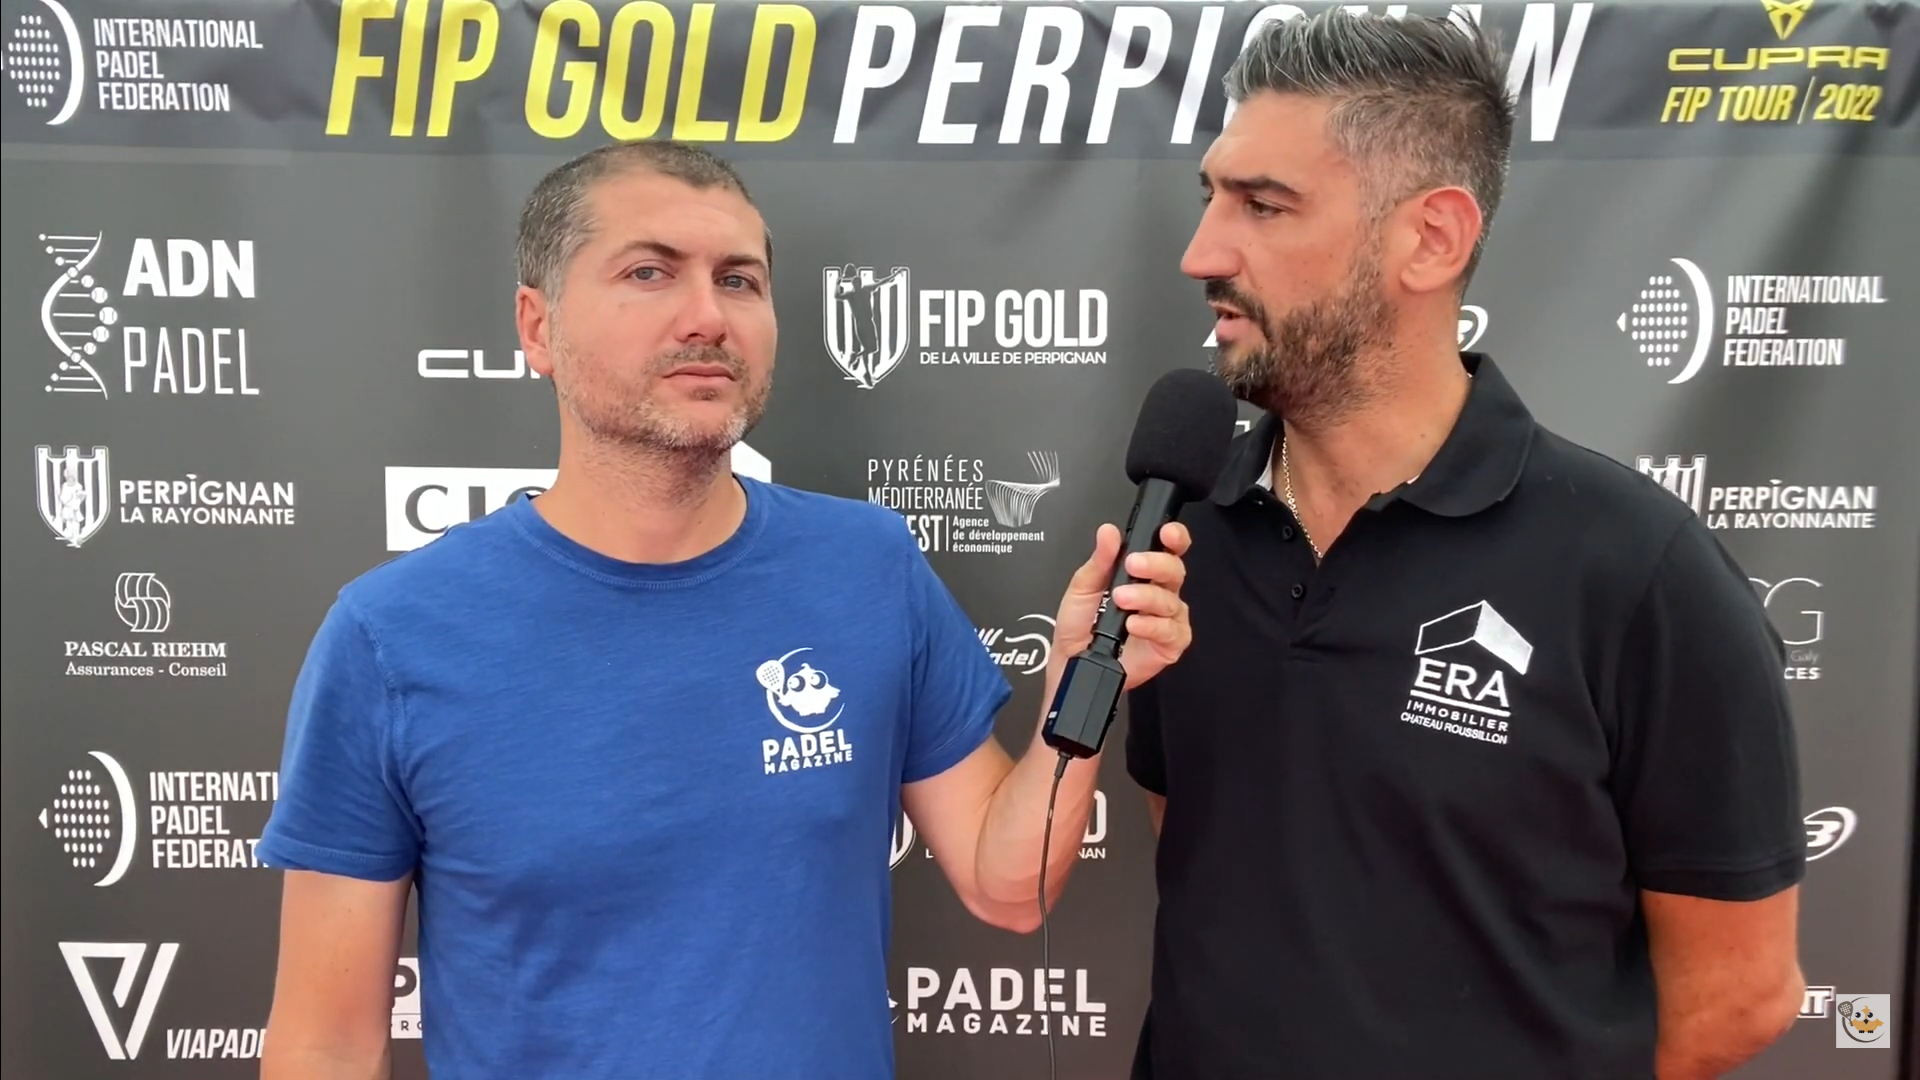 Wywiad z Anthonym Pizzuto FIP Gold Perpignan